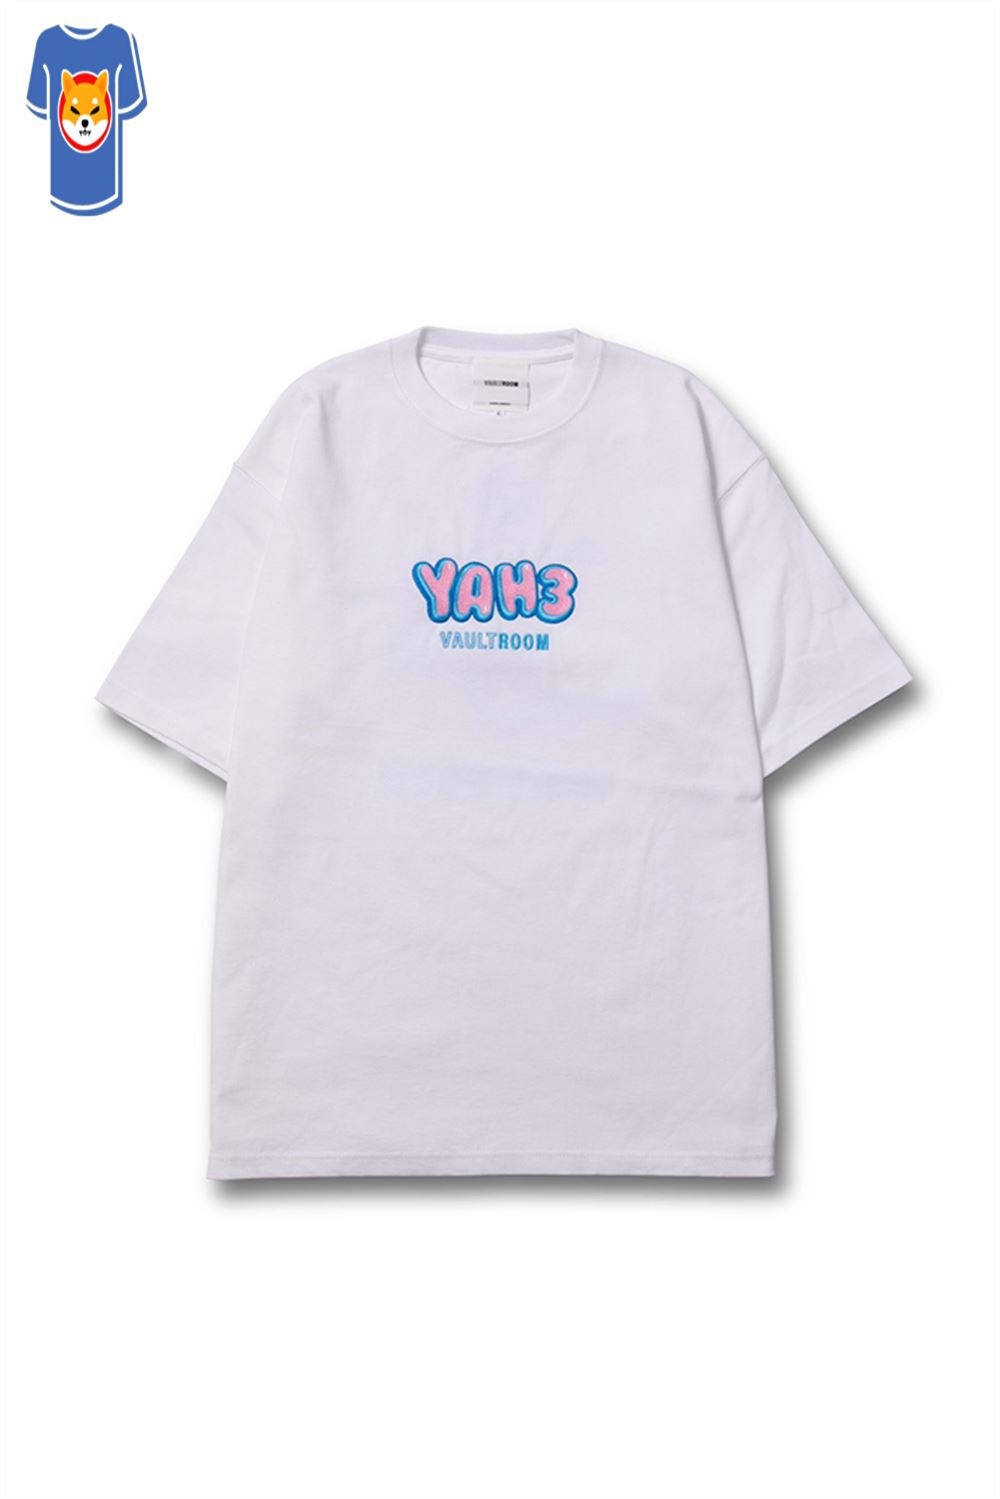 Official Yah3 Vaultroom T-shirt